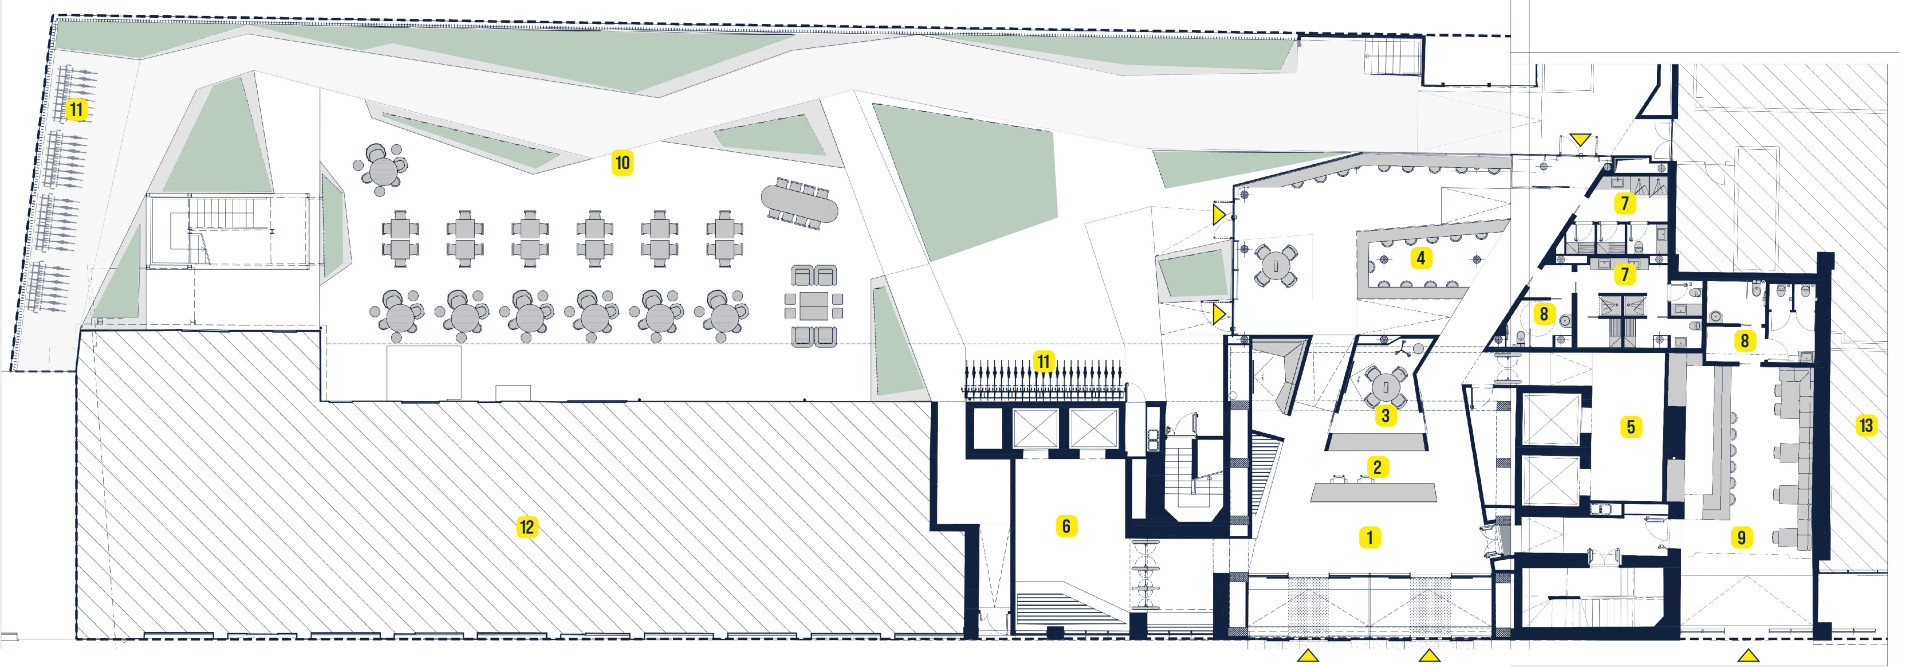 Planimetria giardini interni, reception, uffici eleven piano terra